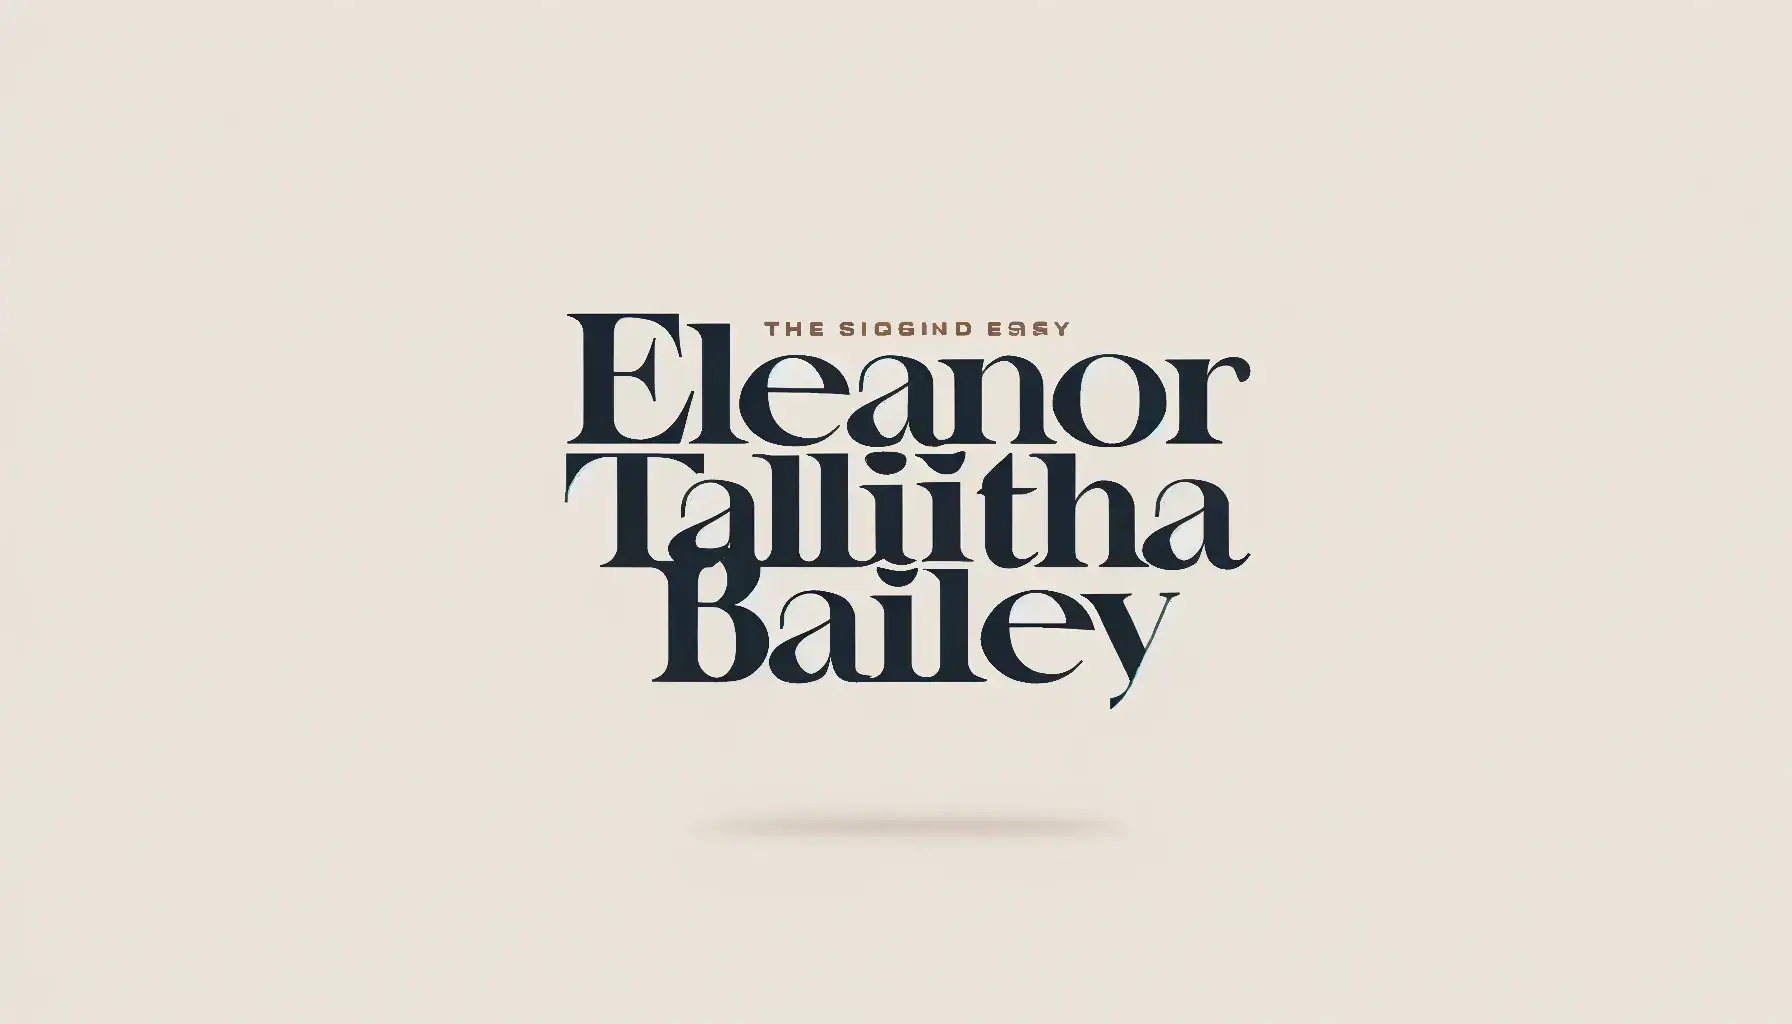 Eleanor Talitha Bailey